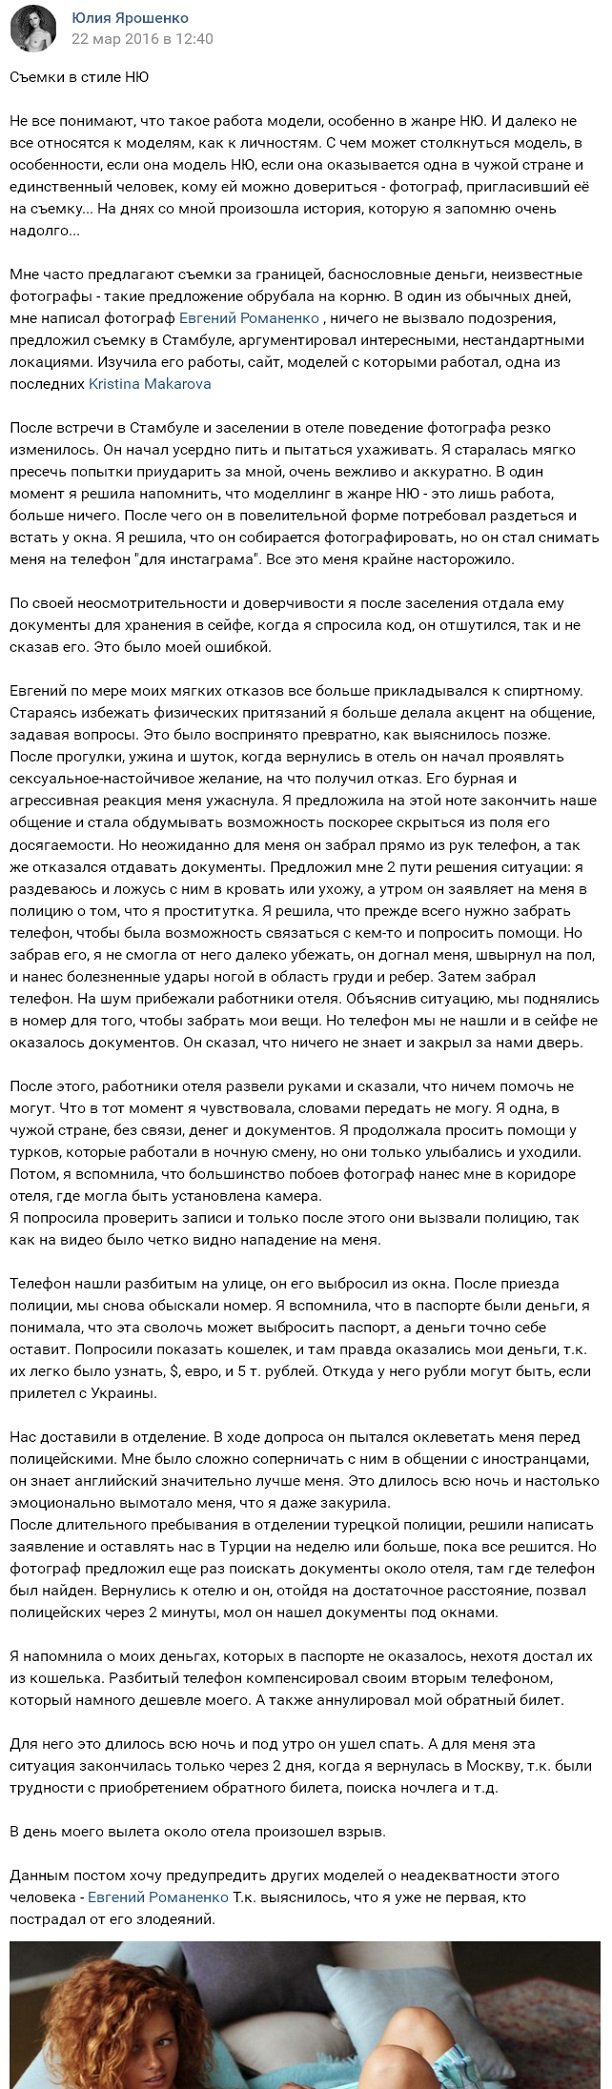 Модель из России Юлия Ярошенко устроила фотосессию в стиле "ню"